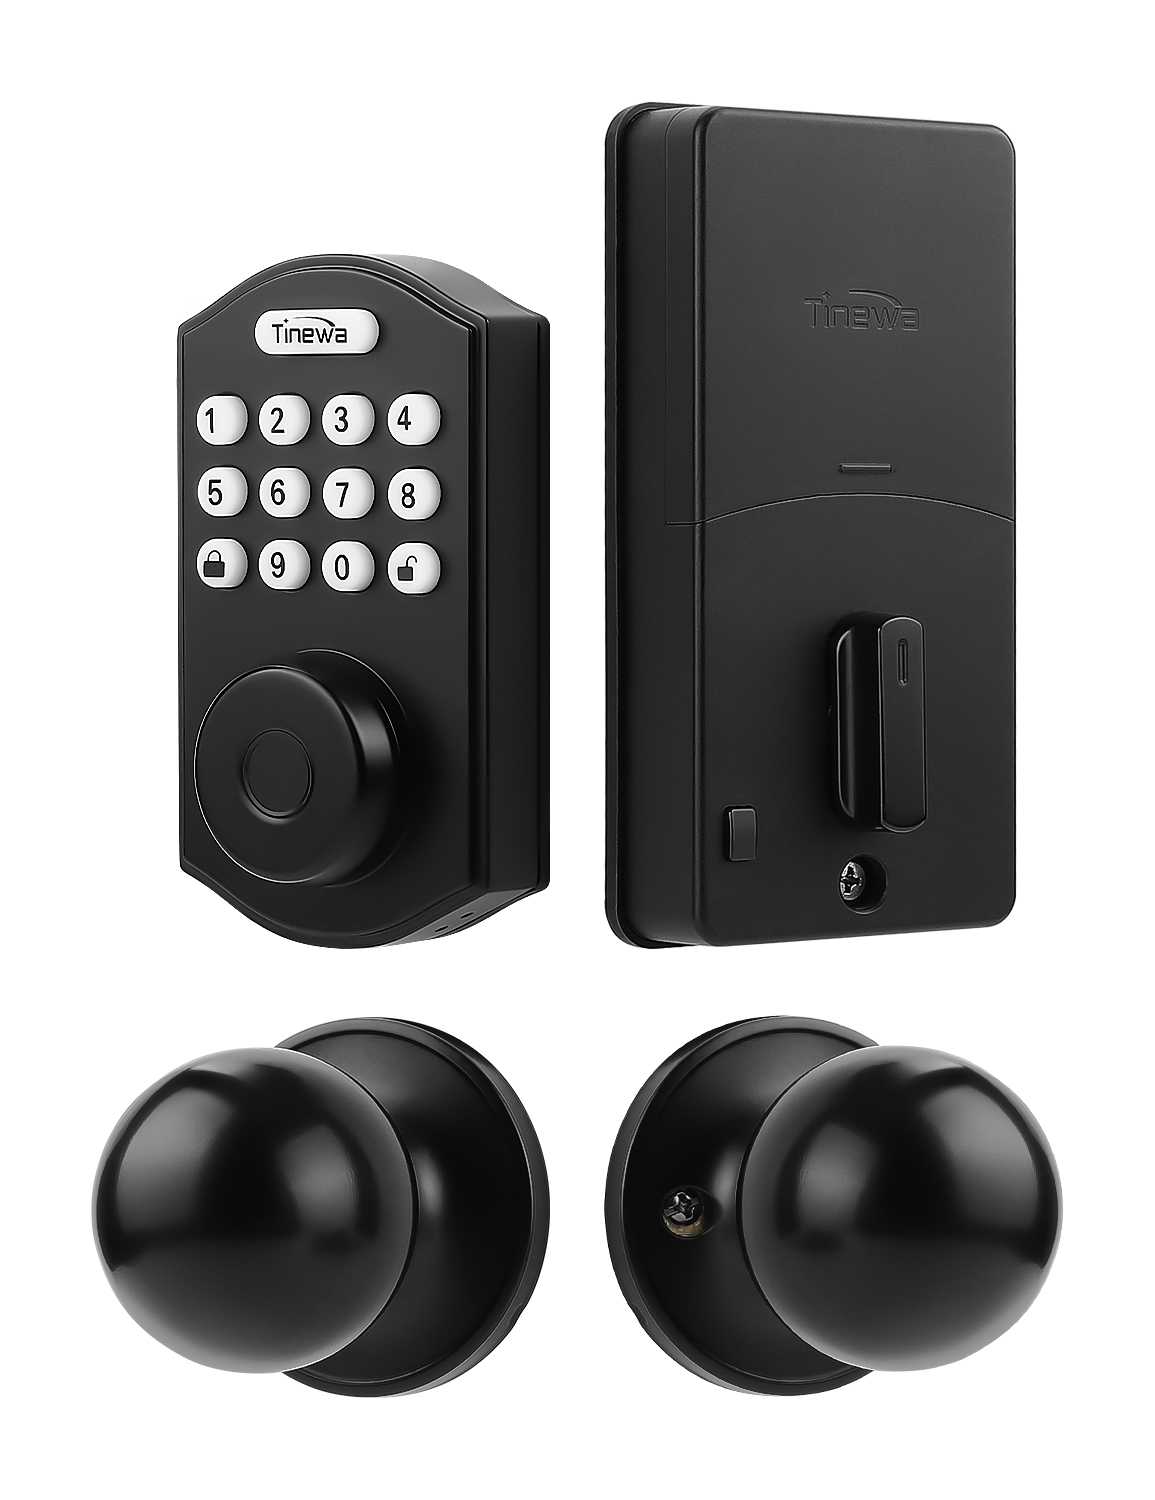 Tinewa Fingerprint Door Lock, Round Keypad Door Lock with Door Knob, Electronic Smart Deadbolt, Front Door Handle Sets, APP Control, Keyless Entry, Auto Lock